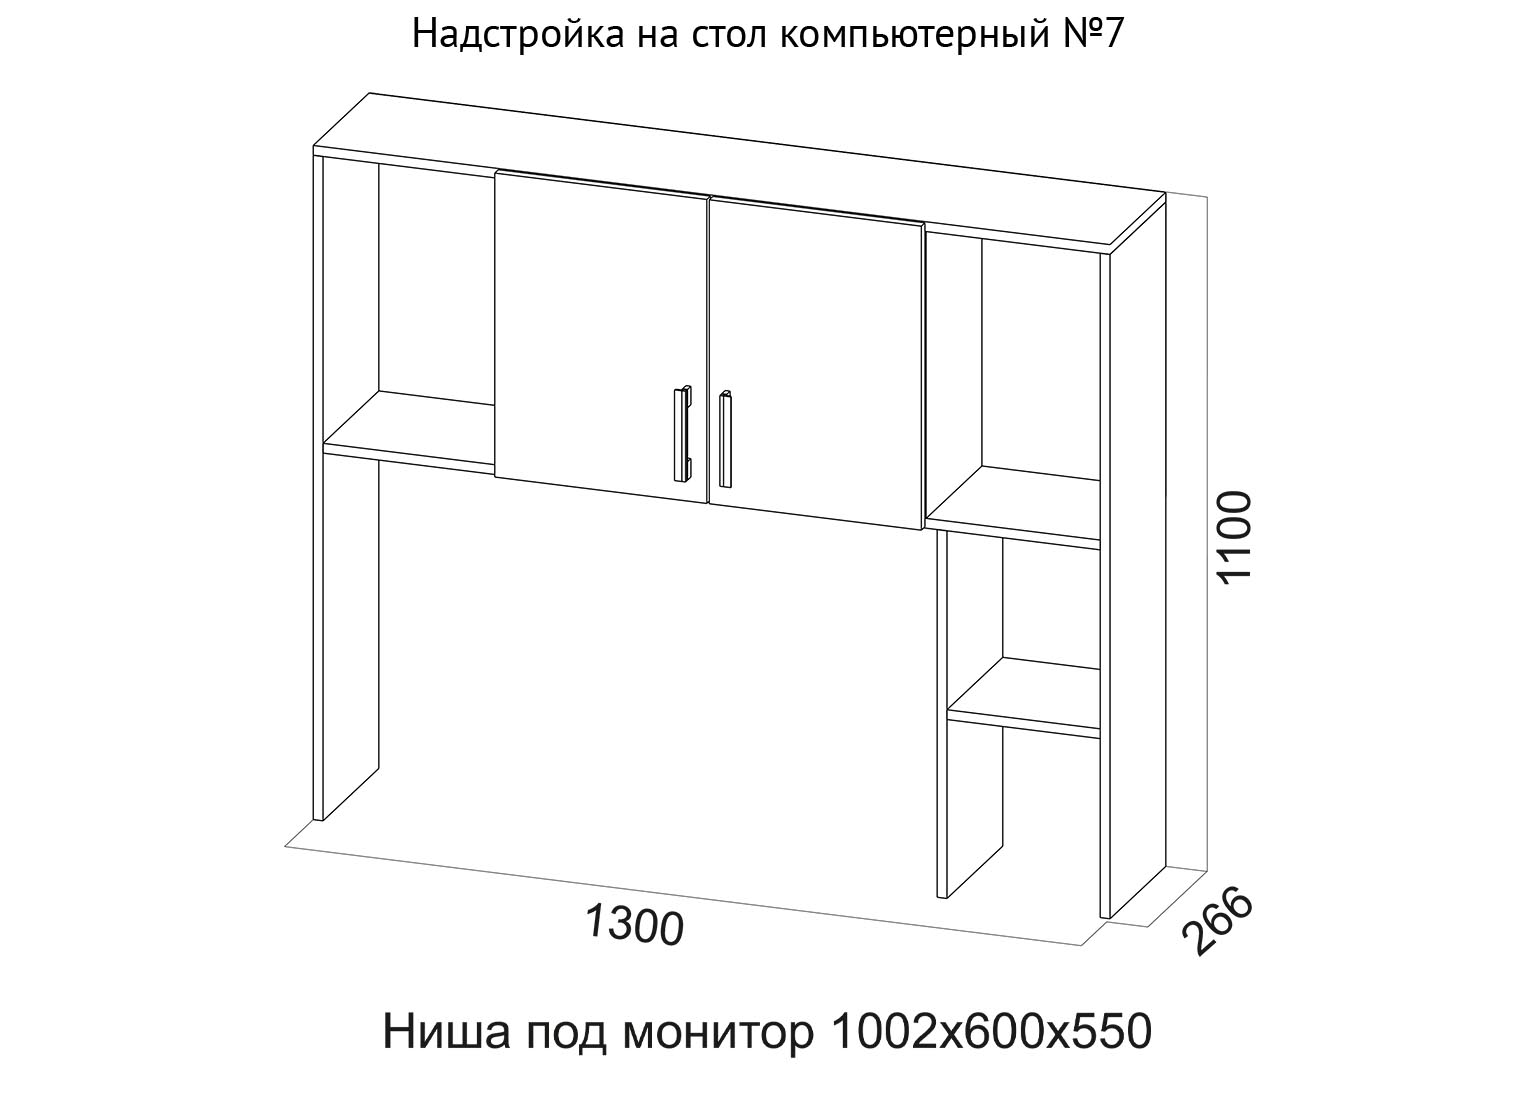 Стол компьютерный №7 Надстройка Схема SV-Мебель